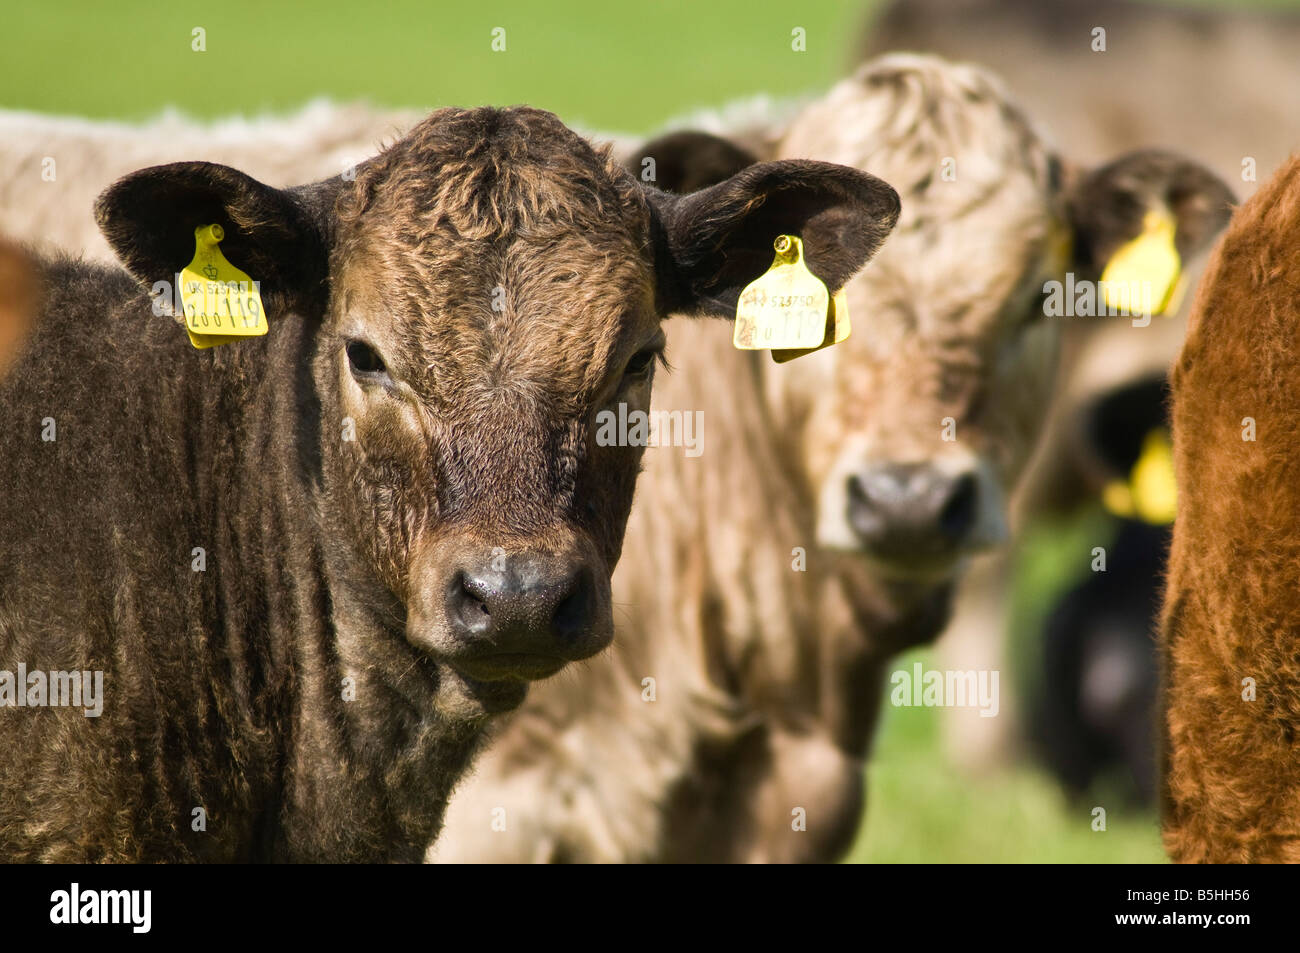 Dh beef cow Animal Regno Unito da vicino i giovani vitelli da macello con identità di bestiame tag tag orecchio Foto Stock